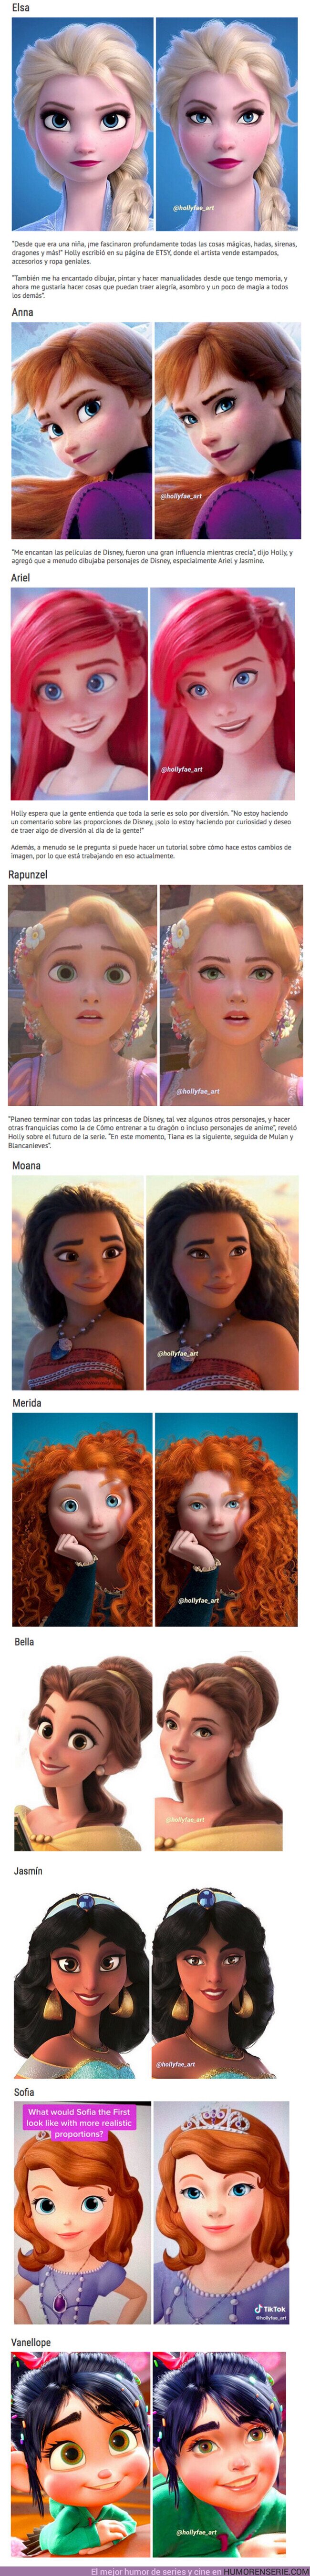 54966 - GALERÍA: Así se verían los rostros de 10 princesas de Disney con proporciones realistas. Por Holly Fae